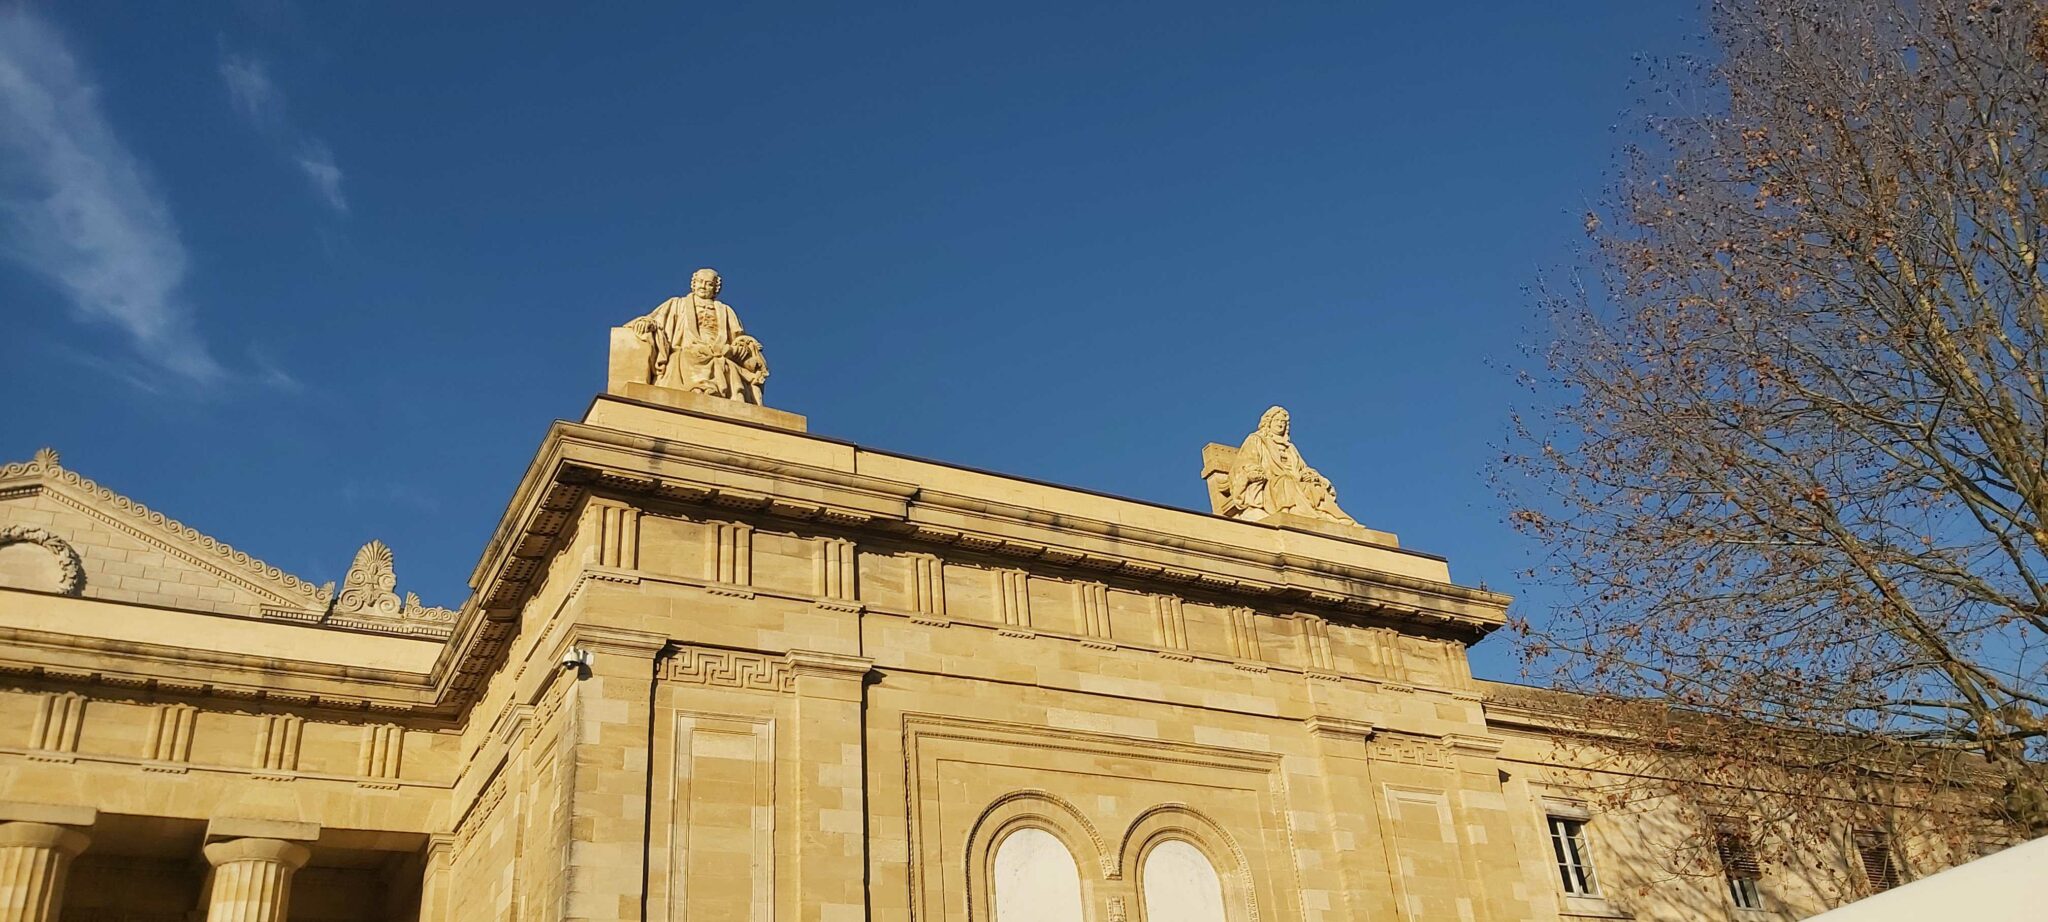 Le palais de justice de Bordeaux est surplombé de deux statues : Montesquieu, à gauche, et Michel de L’Hospital, à droite, qui ont respectivement été critique de l’ancien régime et partisan de la tolérance religieuse.